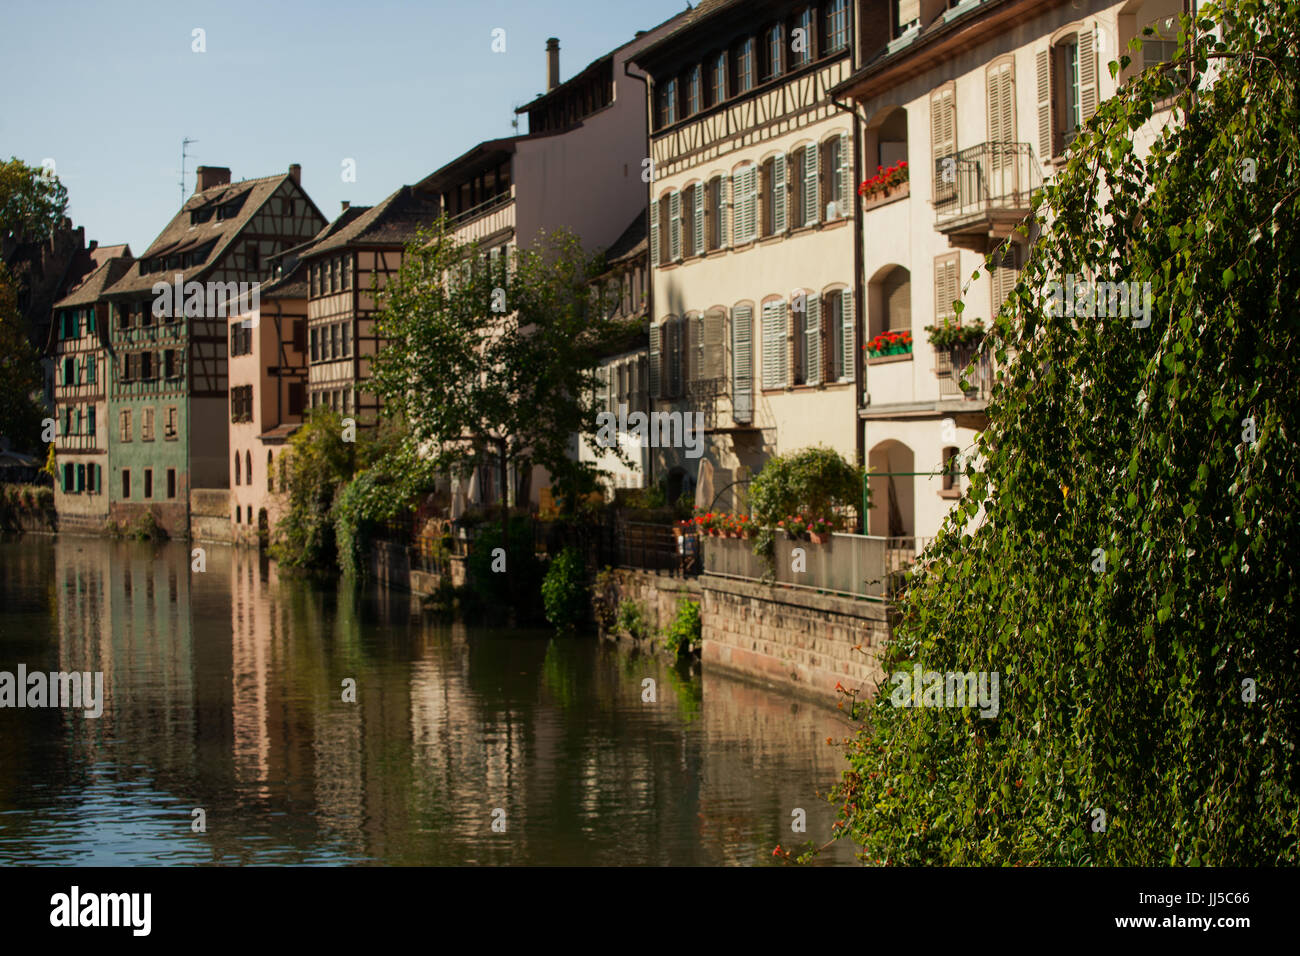 Straßburg, Frankreich - Altstadt; alte Häuser und Gebäude in der Nähe von Stadt Kanalsystem am sonnigen Tag; Stockfoto